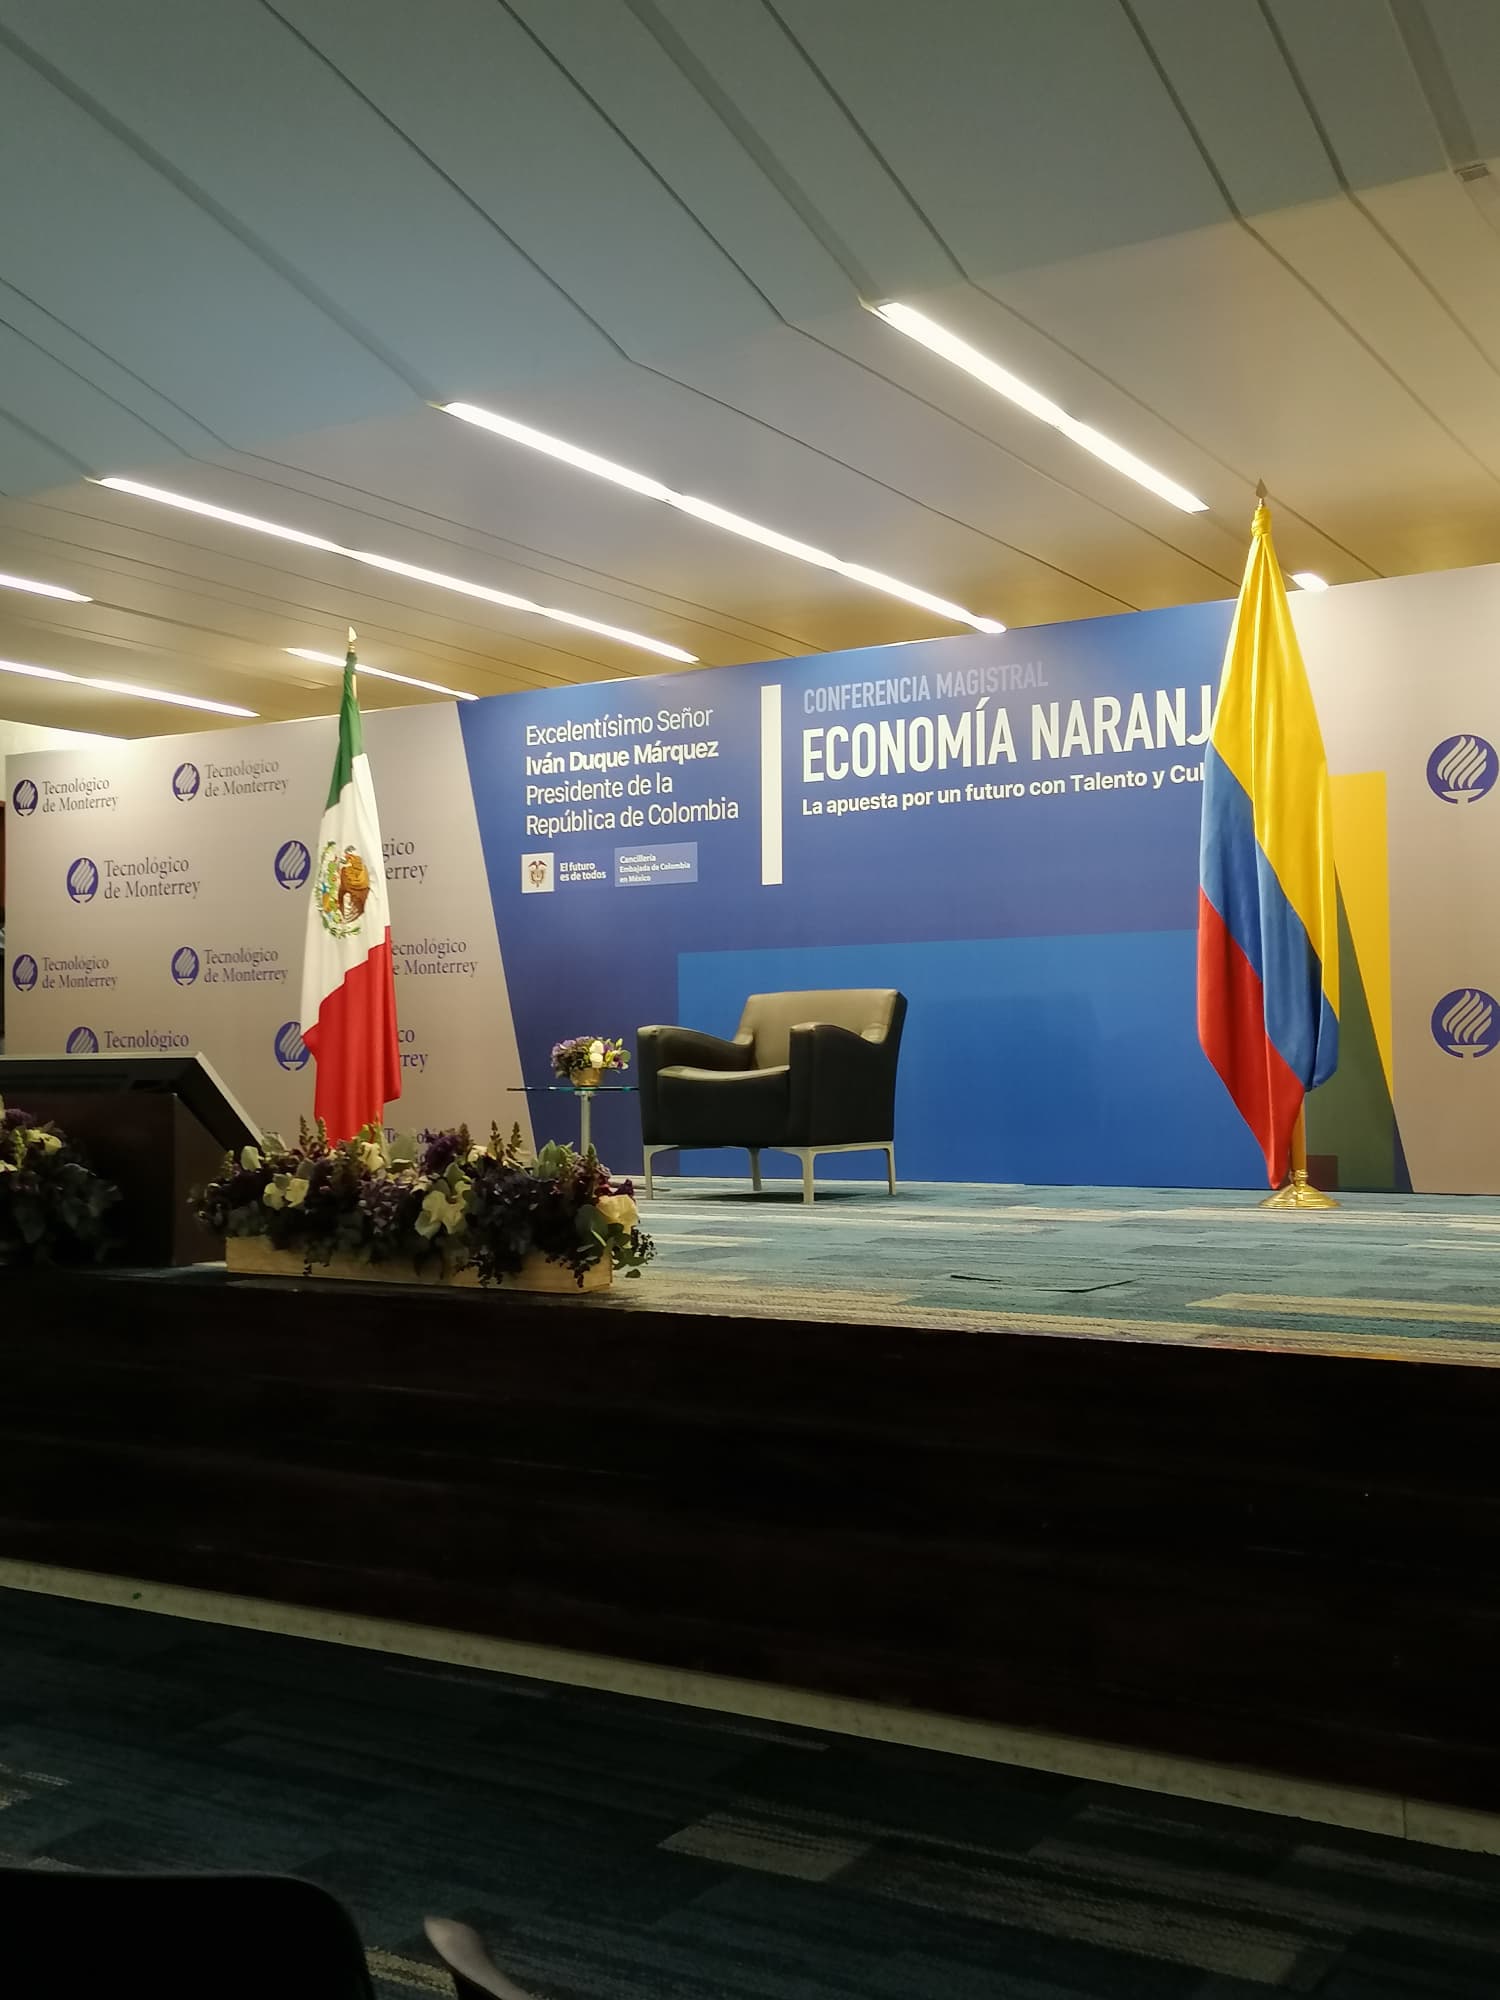 Conferencia Magistral "Economía Naranja" por el Presidente de la República de Colombia, Sr. Iván Duque Márquez(10 de marzo de 2020)